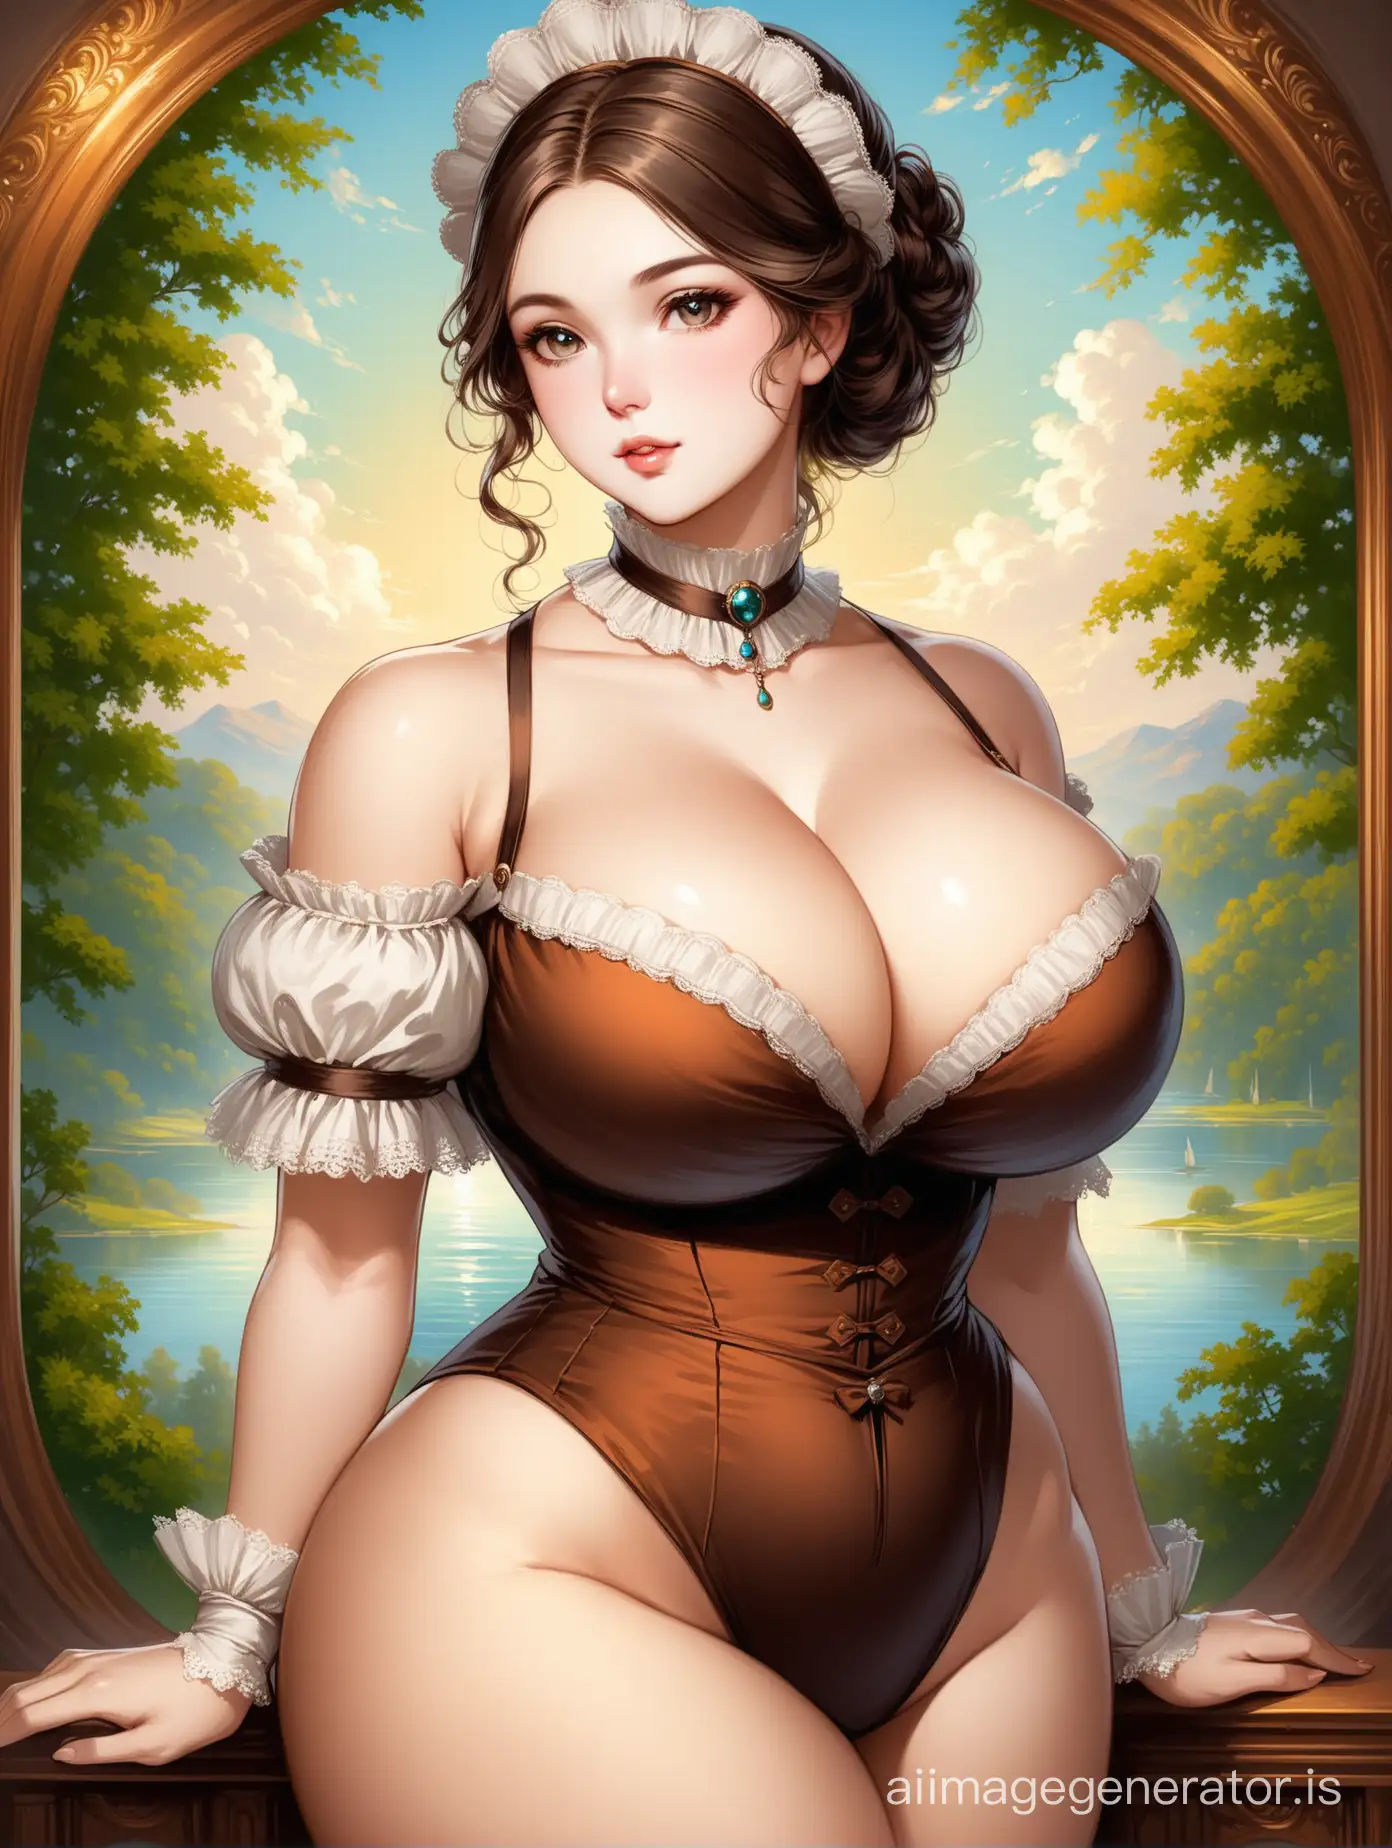 Victorian-Era-Portrait-of-a-Curvaceous-Woman